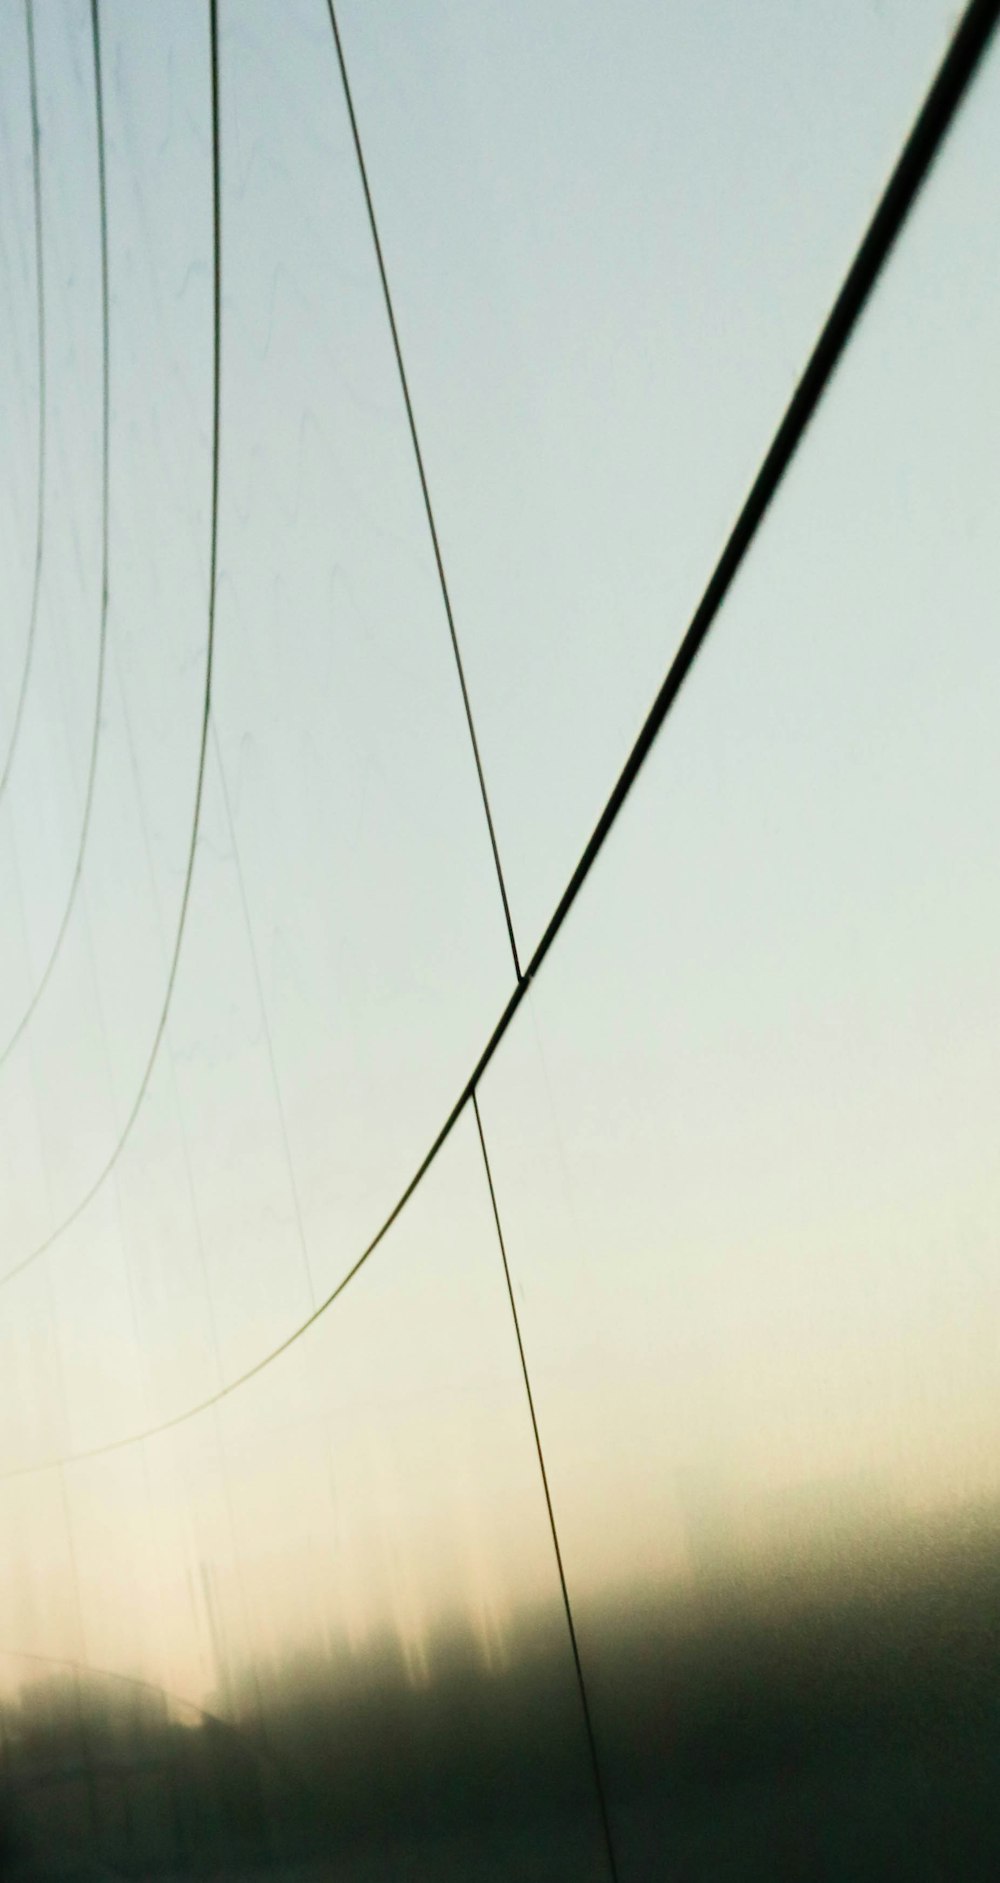 uma foto borrada de um poste telefônico e fios